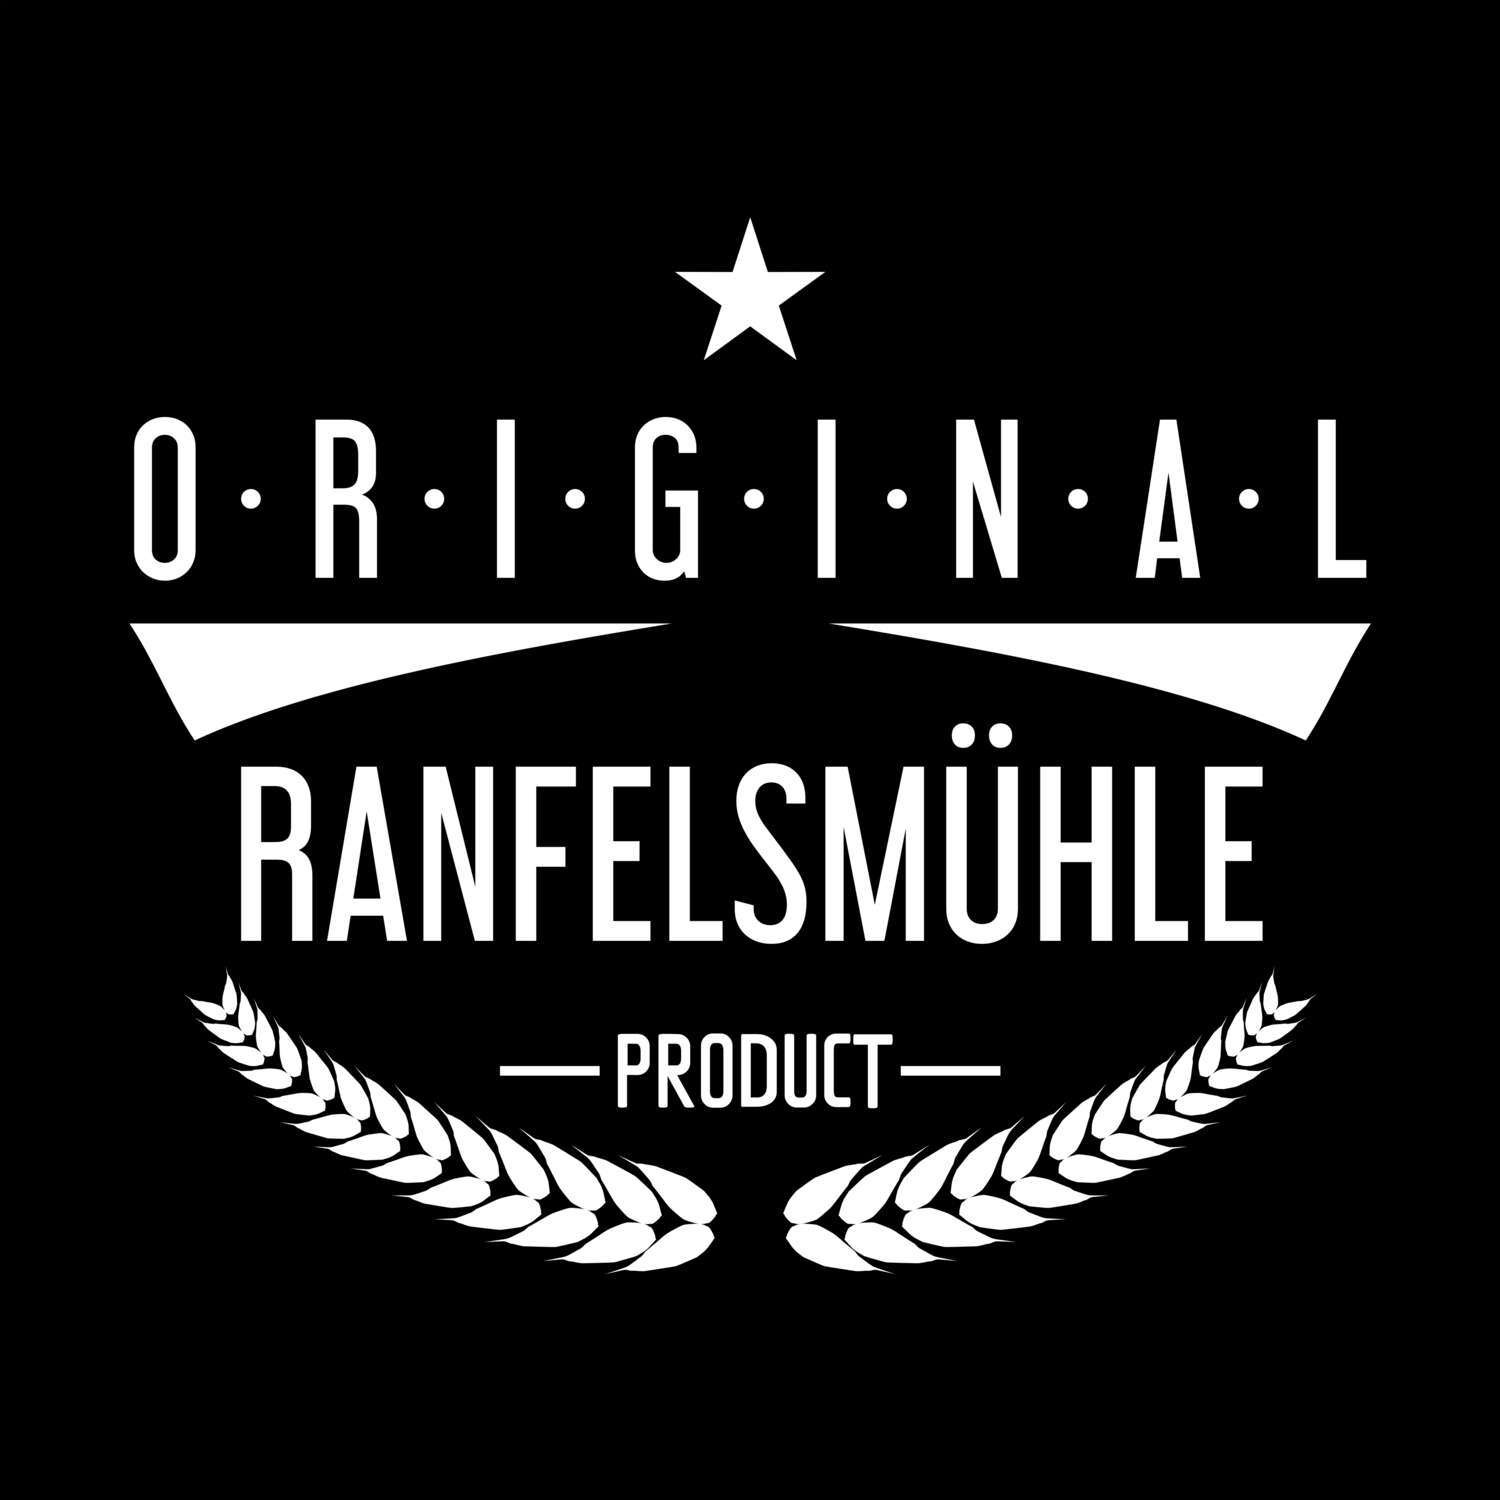 Ranfelsmühle T-Shirt »Original Product«